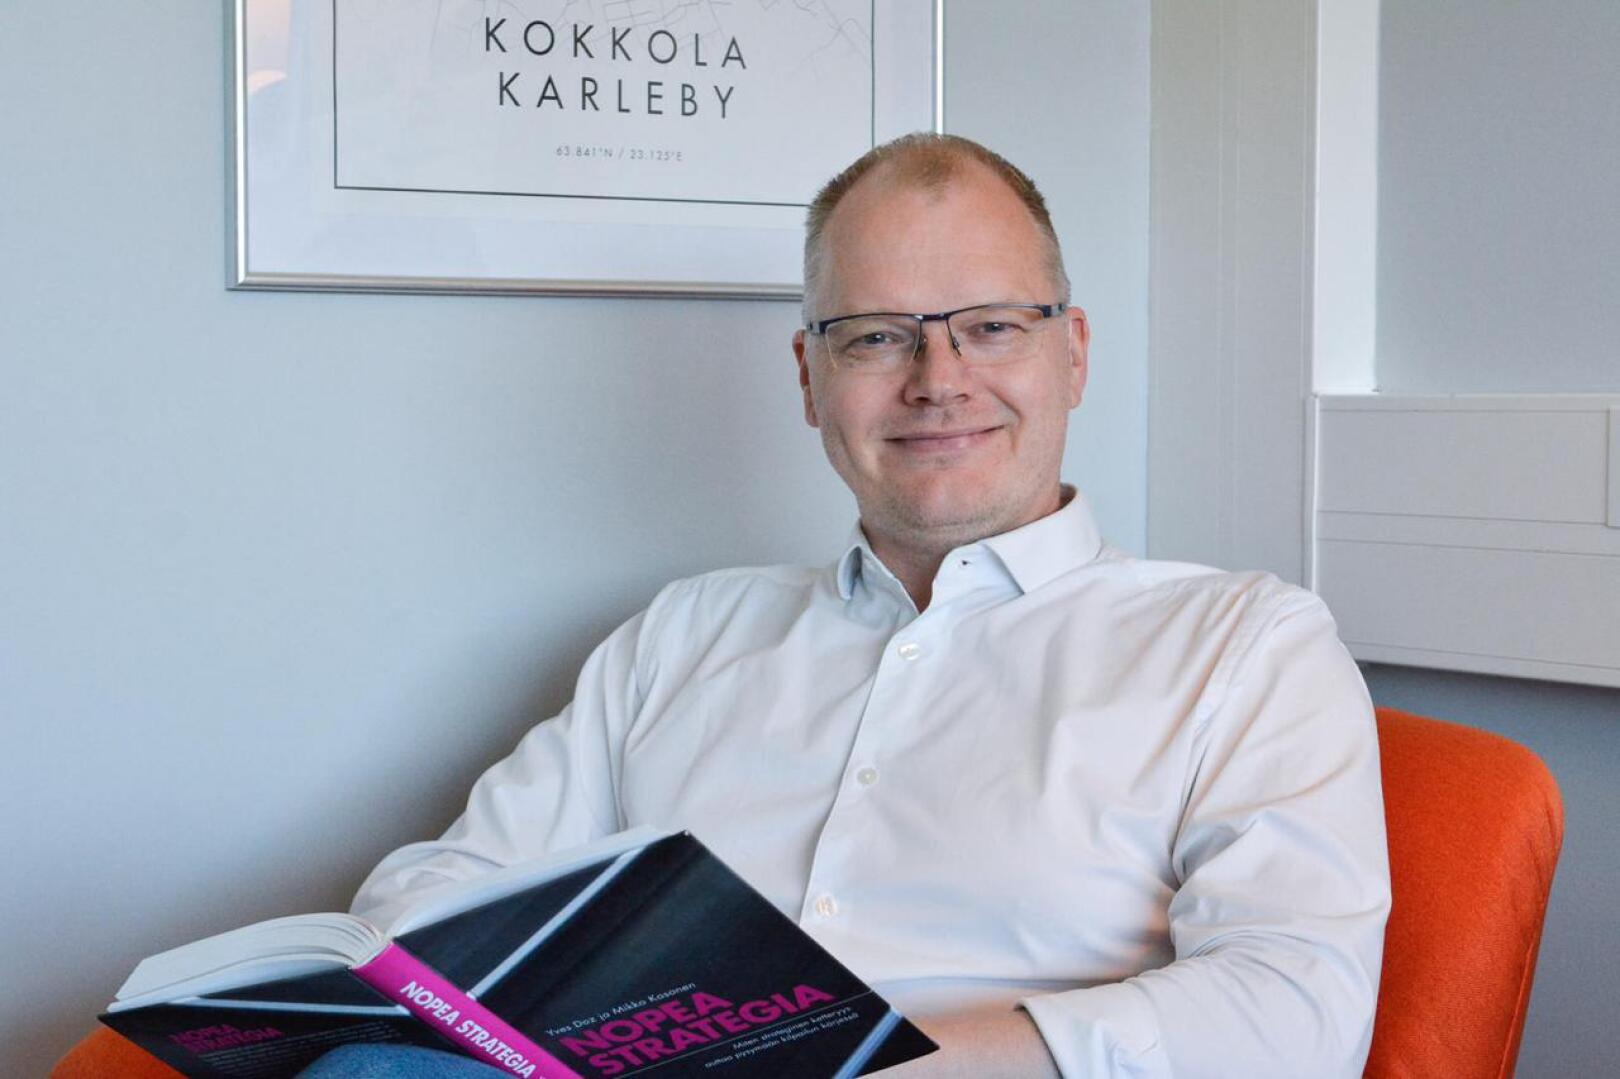 Meriuksen toimitusjohtaja Hannu Sarja kehittää itseänsä muun muassa lukemalla. -Olen lukenut yhden tietokirjan verran kuukaudessa jo 11 vuoden ajan, hän kertoo.